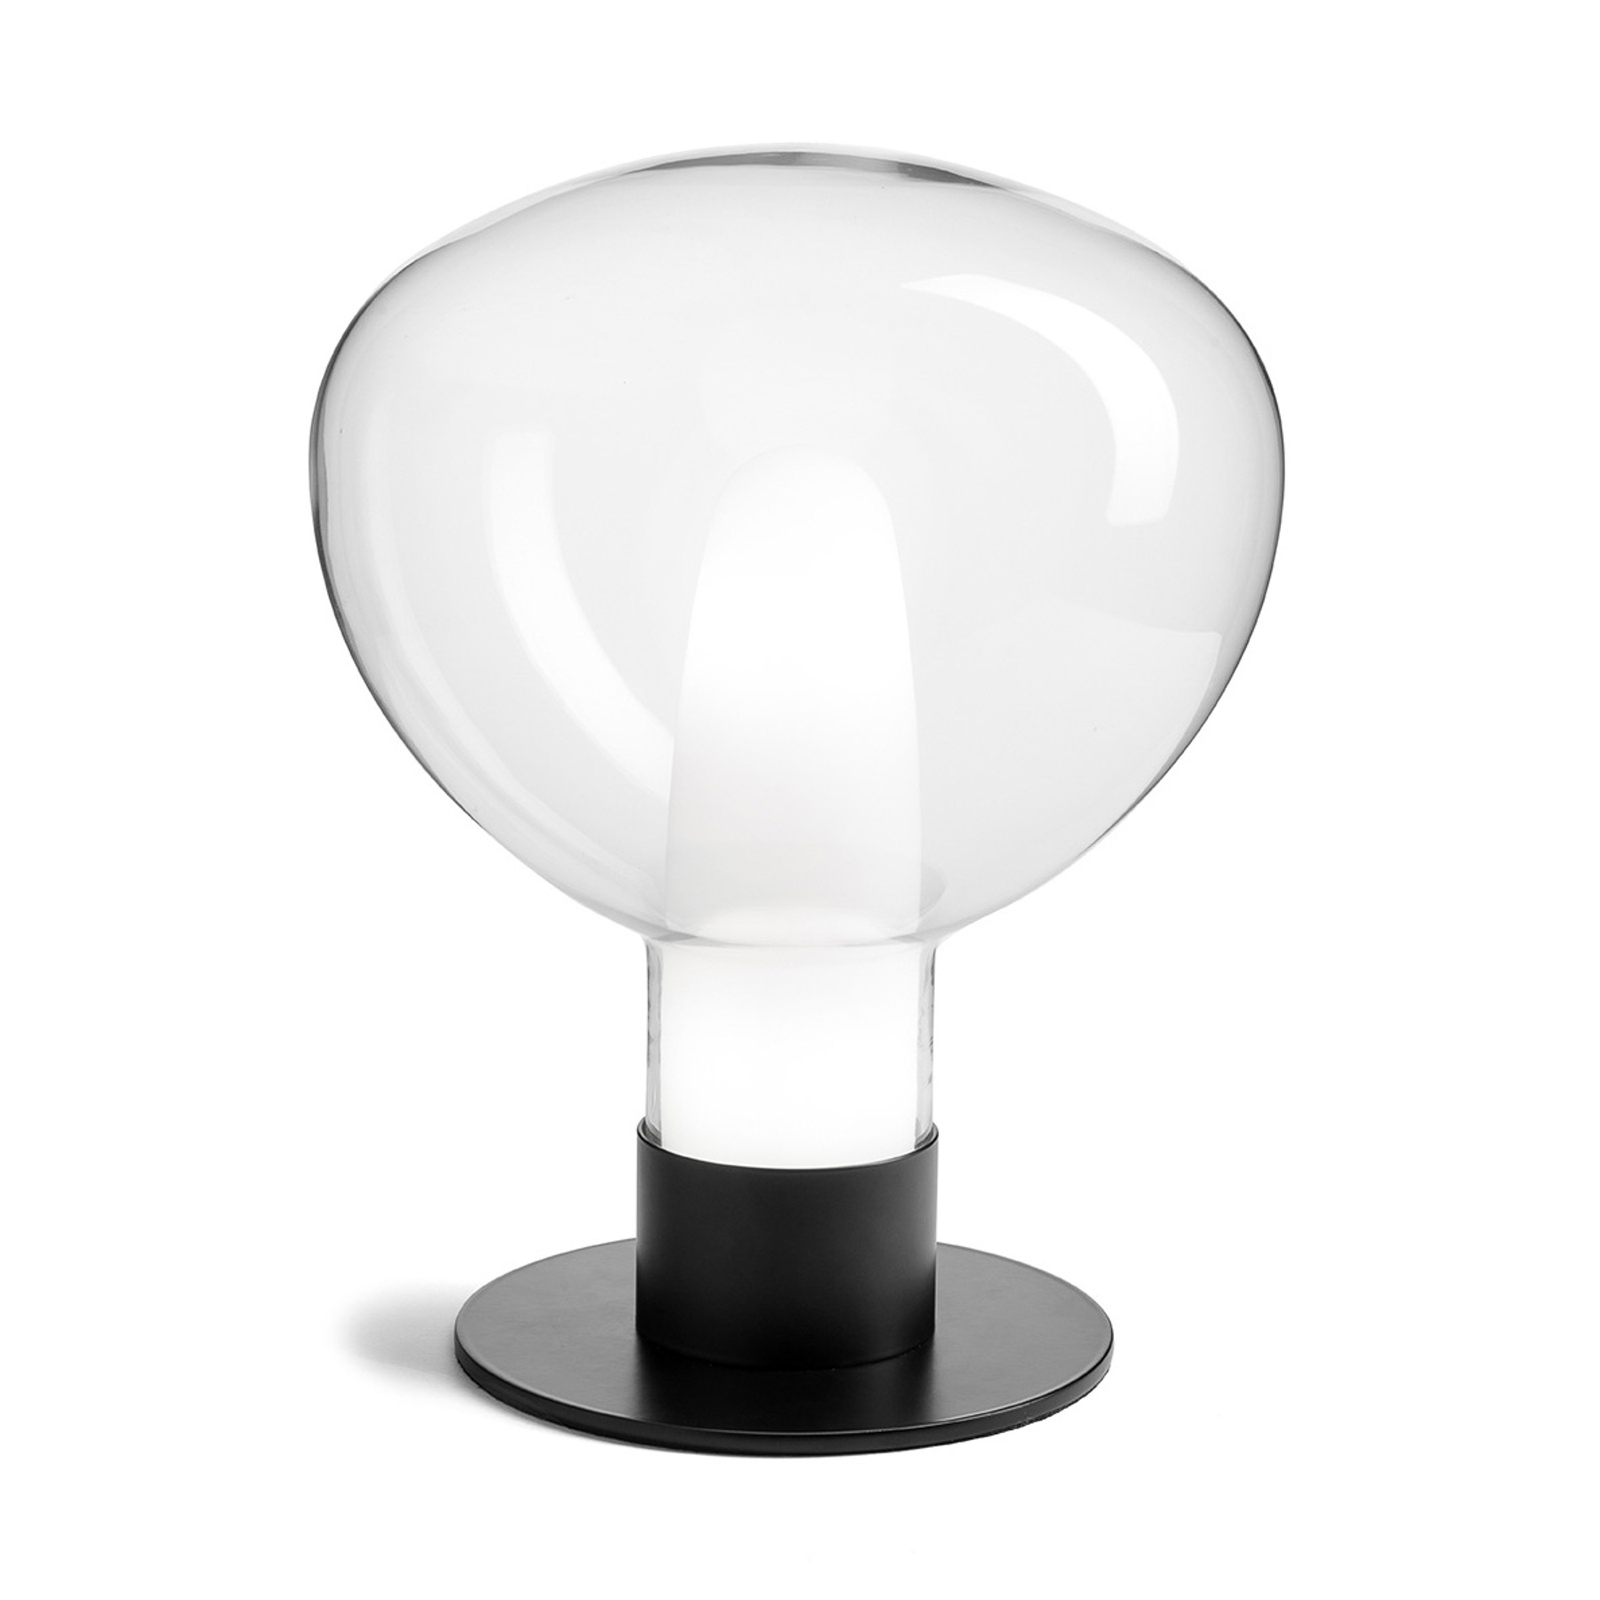 Chobin glass table lamp